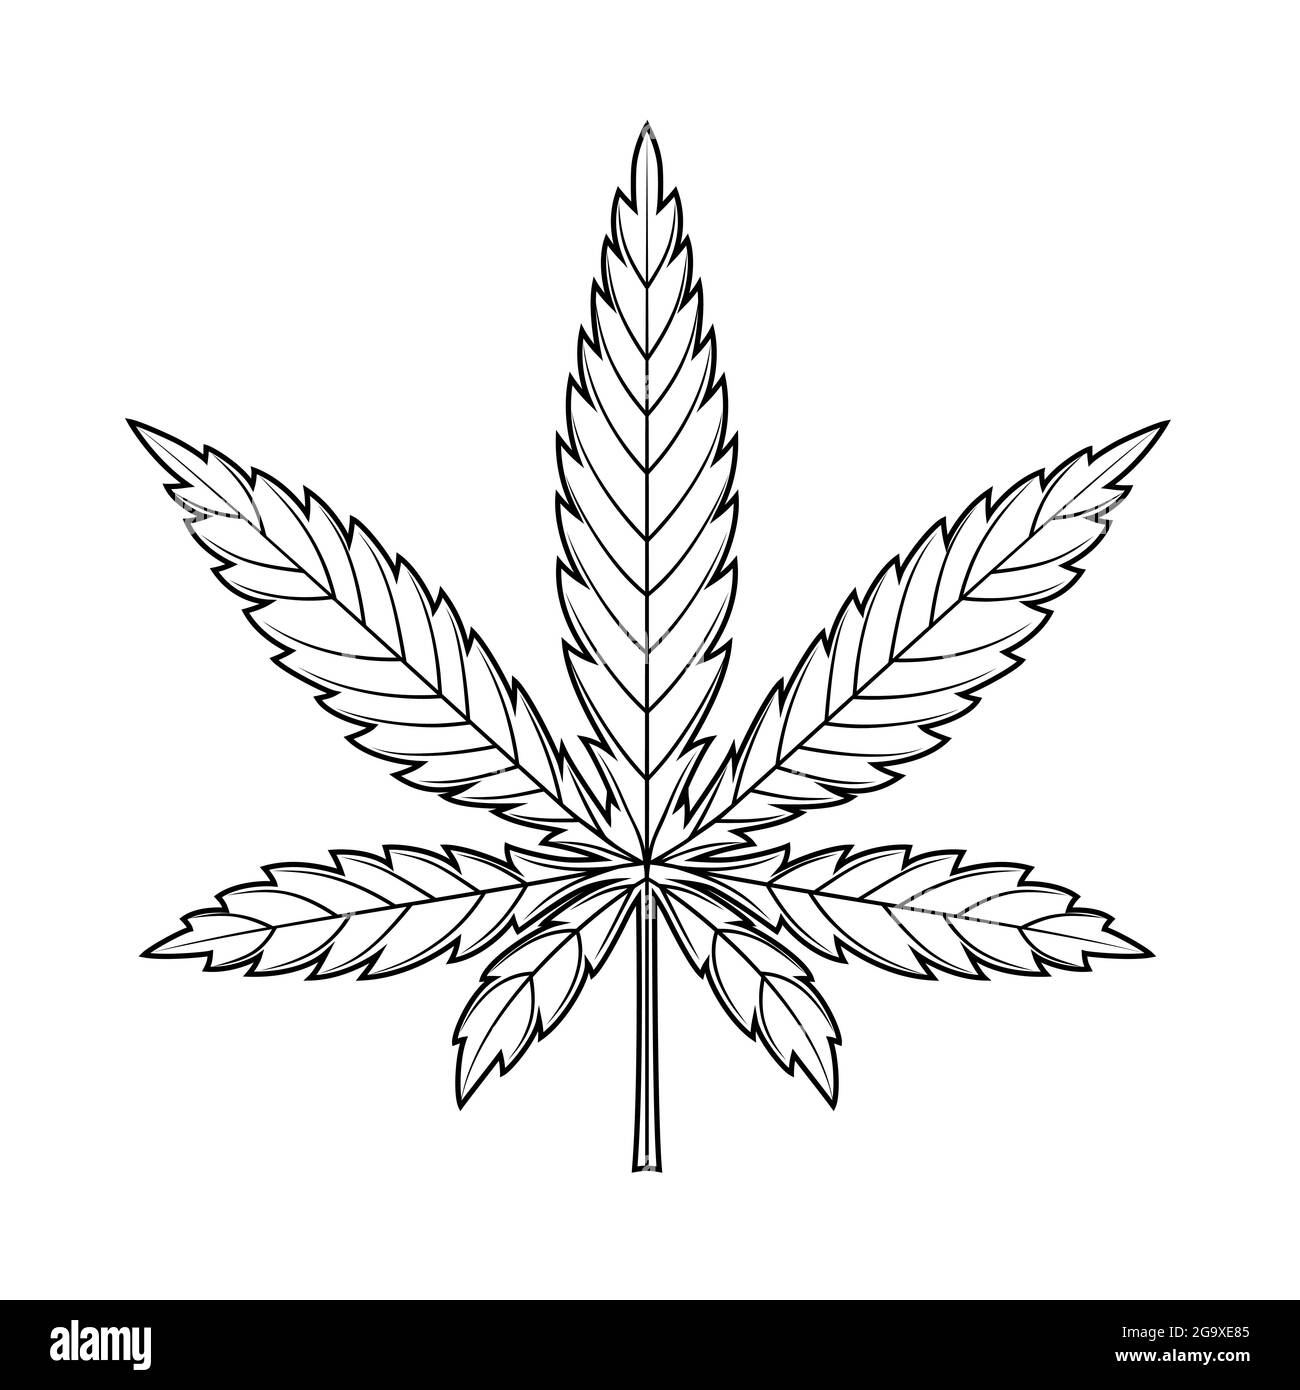 Foglia di cannabis Foto e Immagini Stock in Bianco e Nero - Alamy